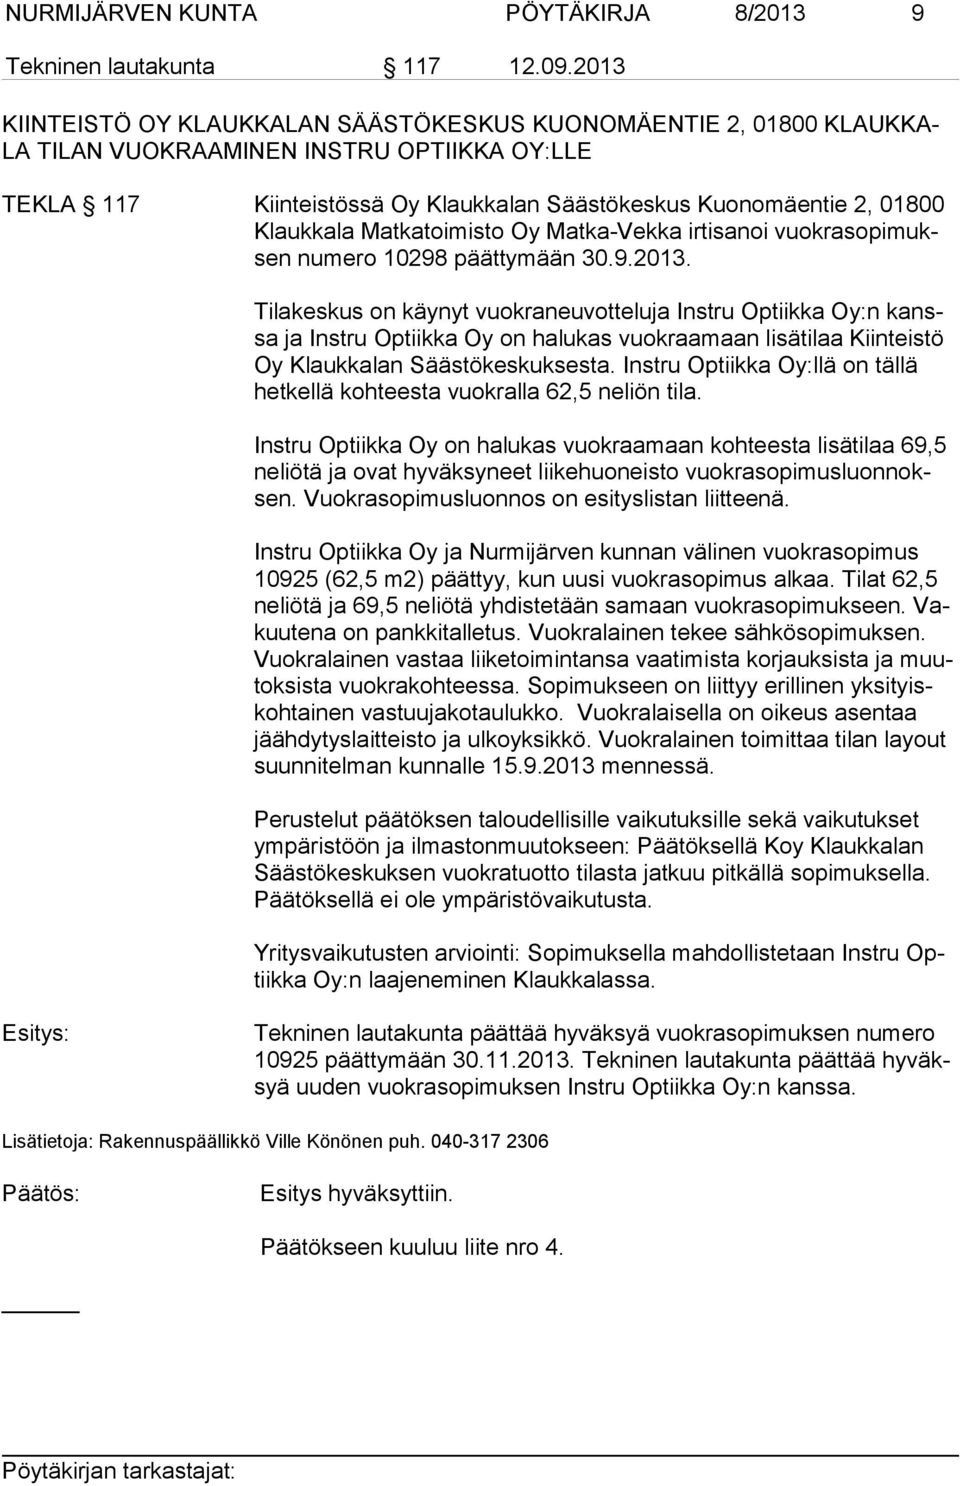 ka la Matkatoimisto Oy Matka-Vekka irtisanoi vuokrasopimuksen numero 10298 päättymään 30.9.2013.